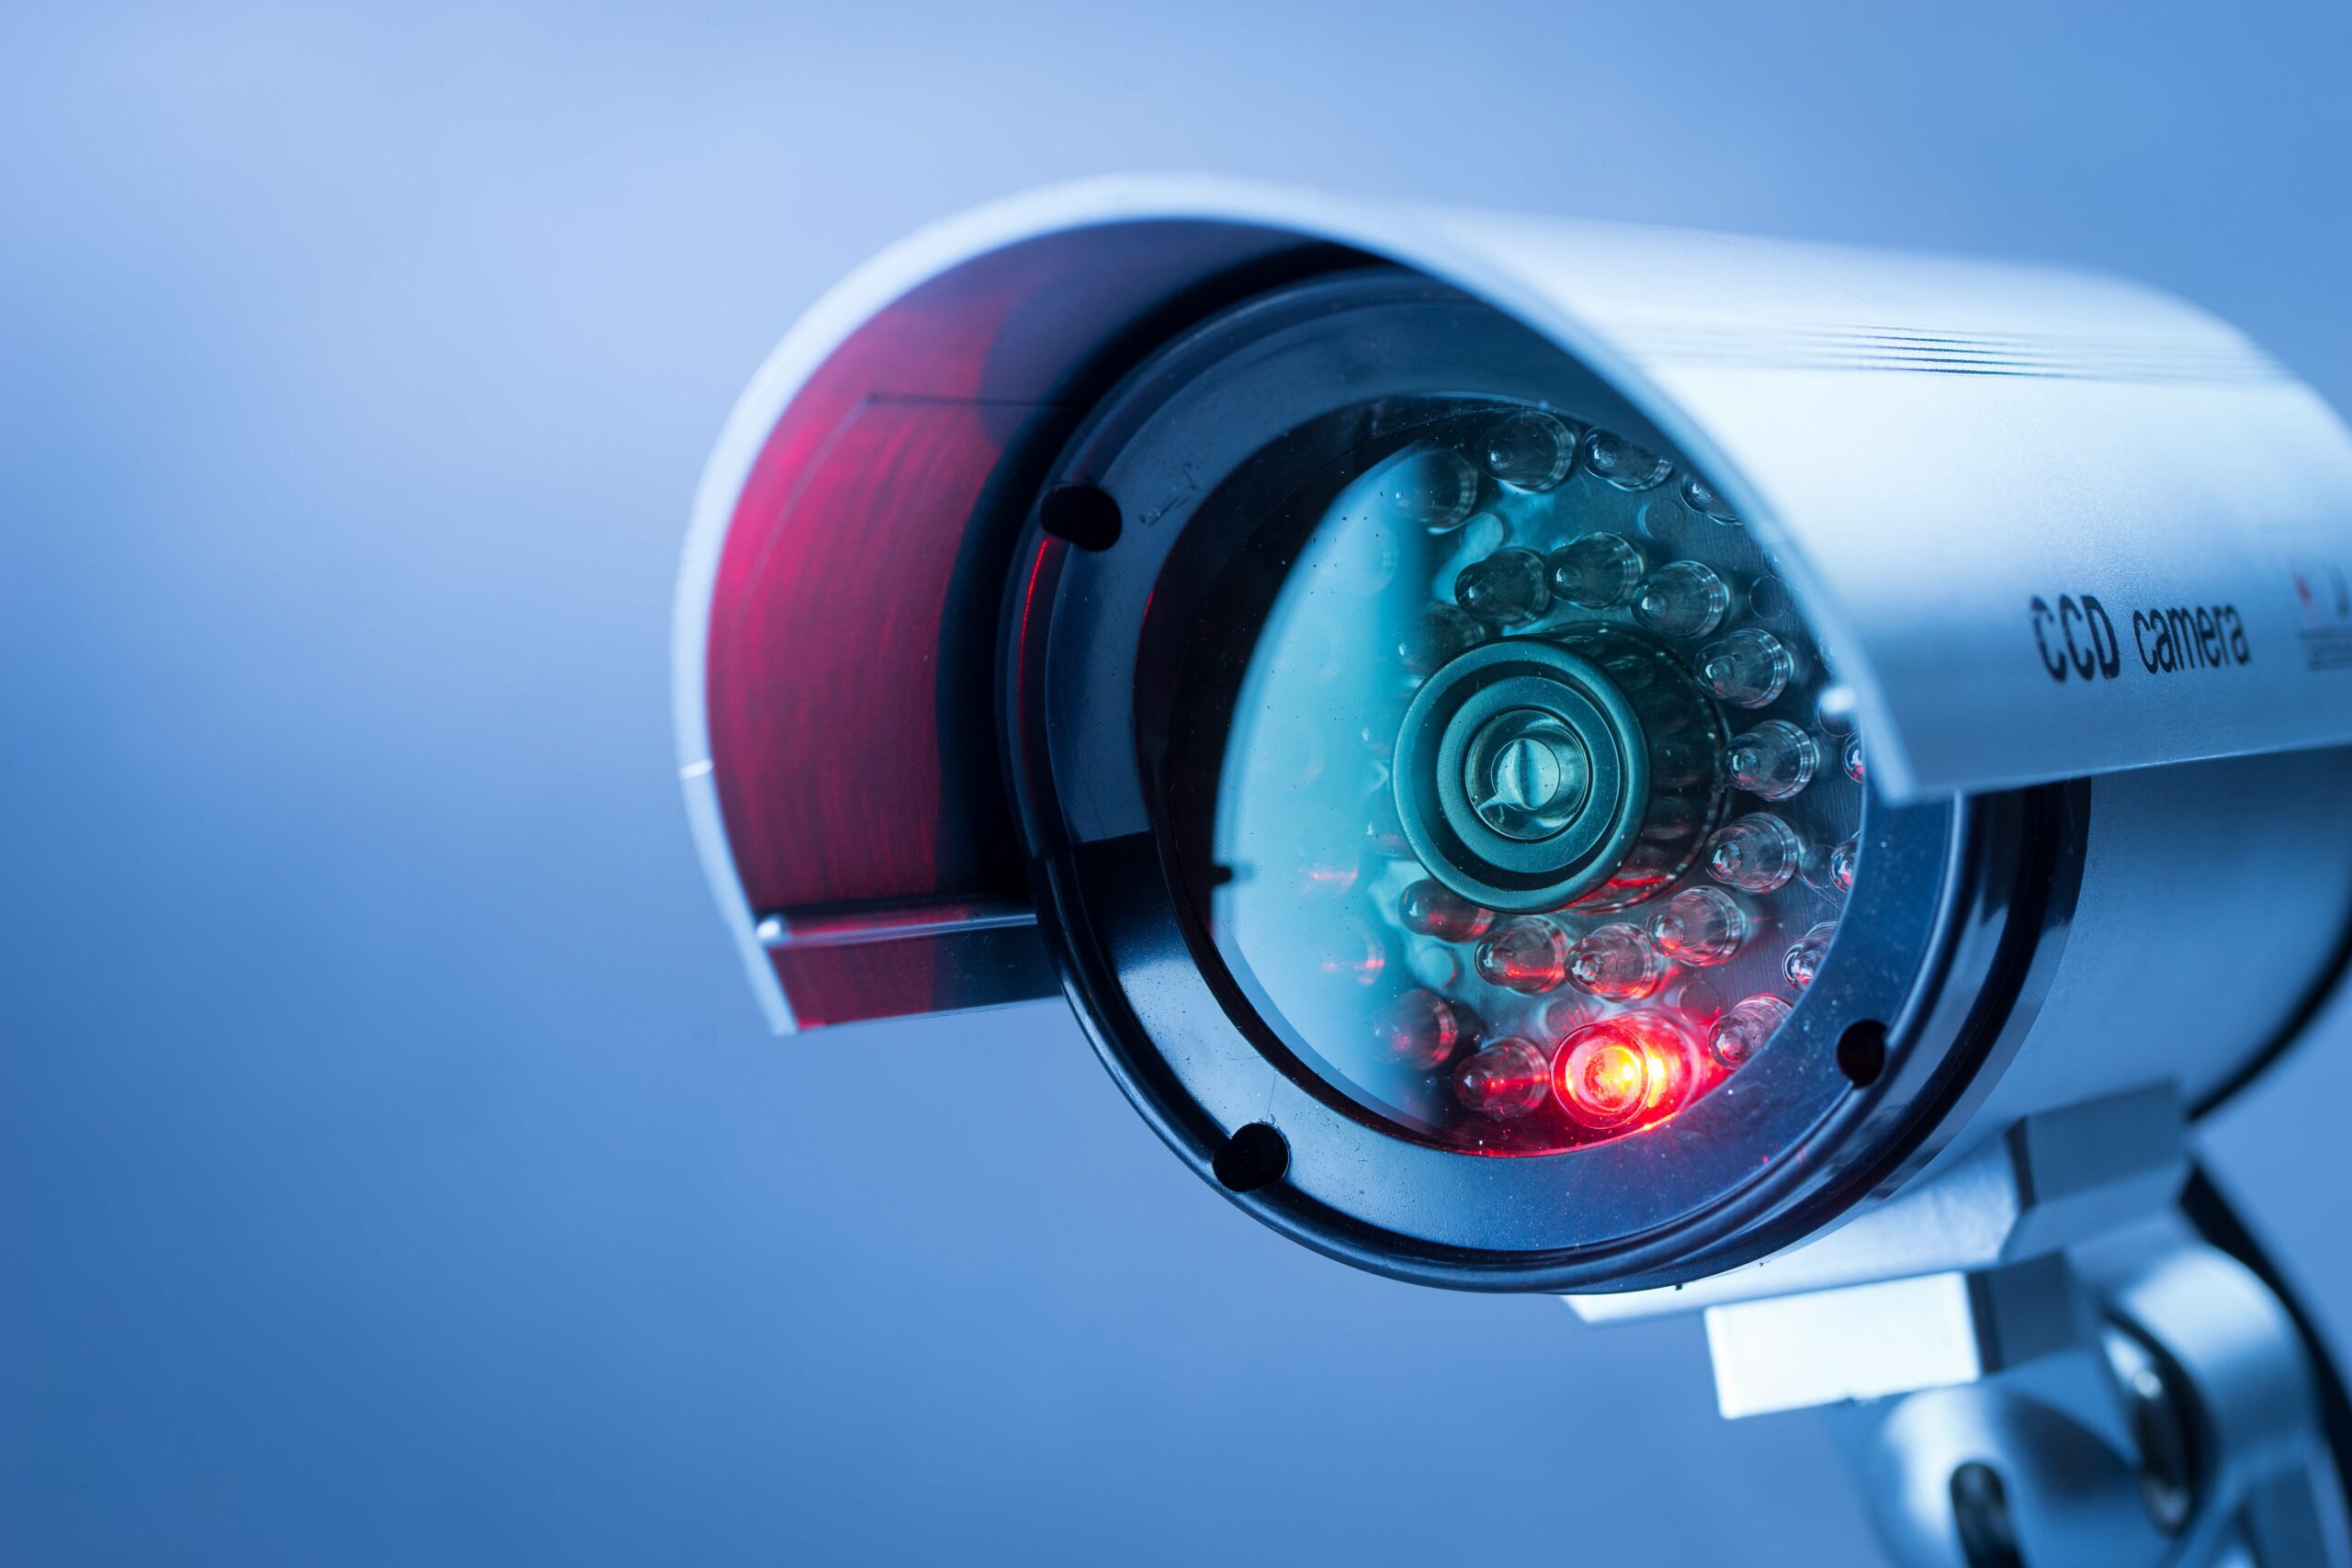 Üsküdar Security Camera Systems & Installation